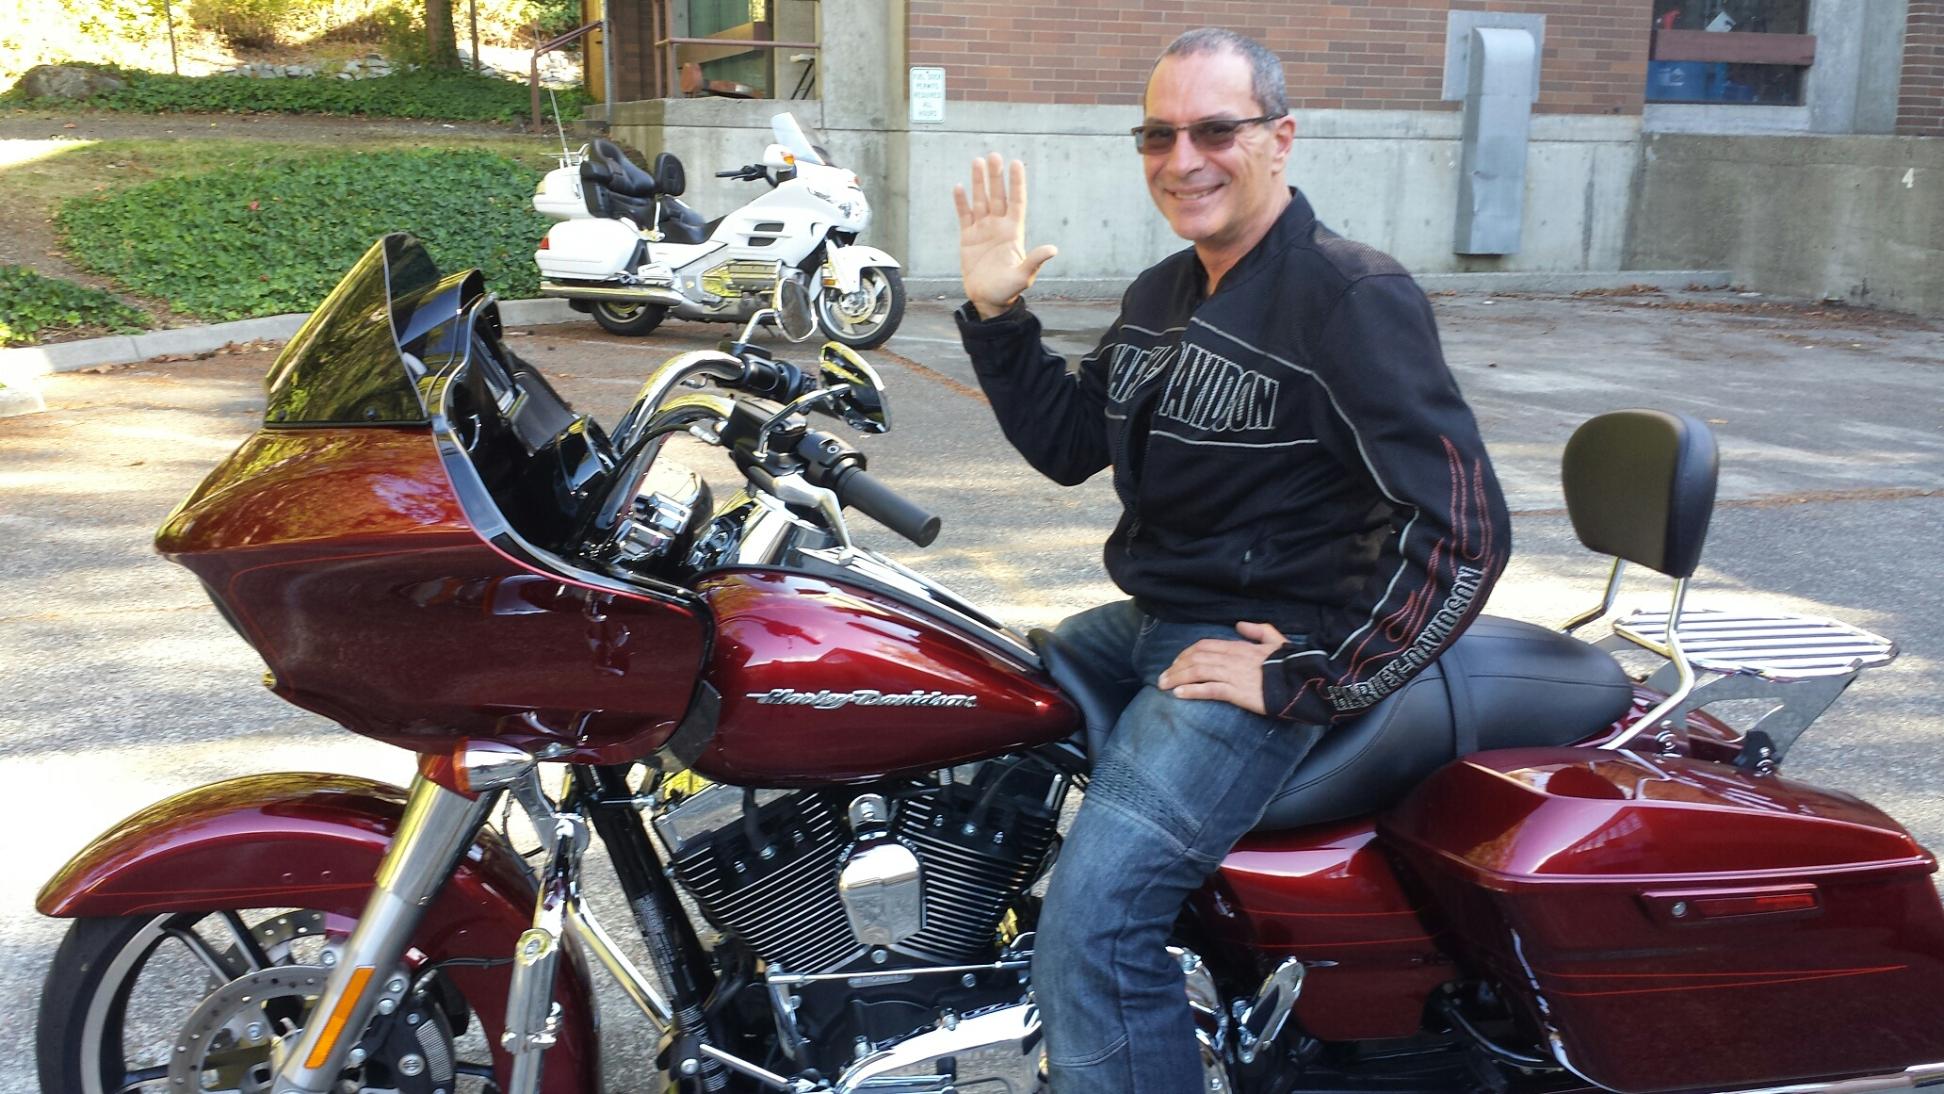 Dr. Keith Hyatt on his Harley motorcycle